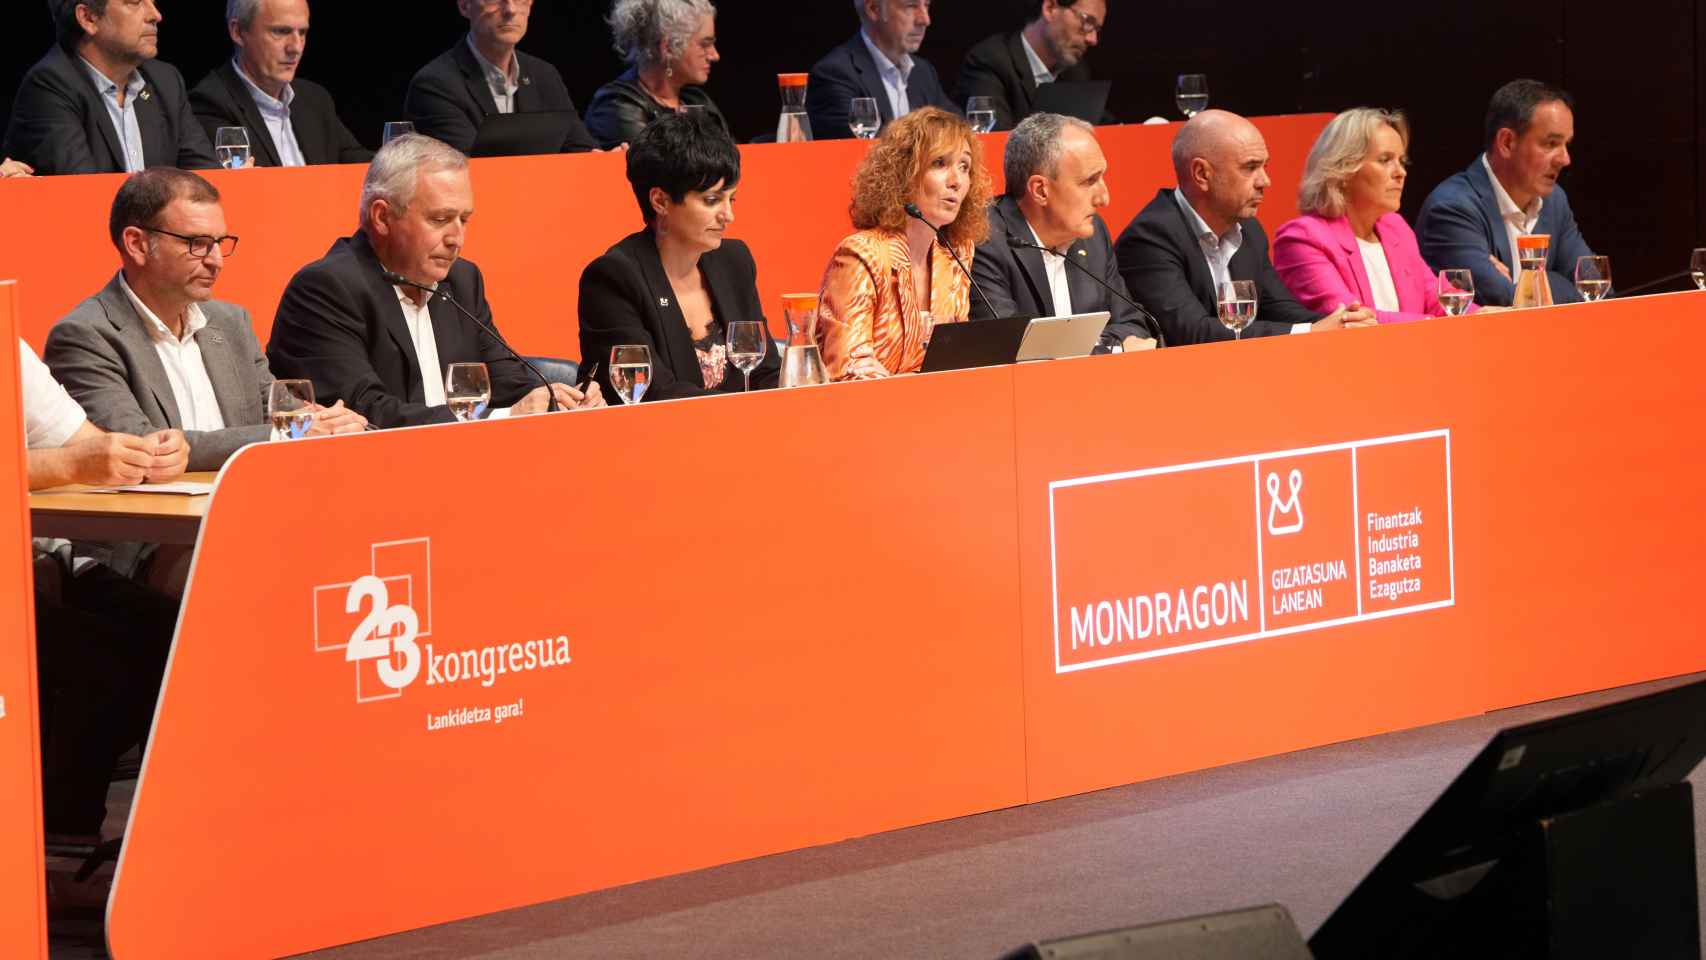 Congreso del Grupo Mondragón.